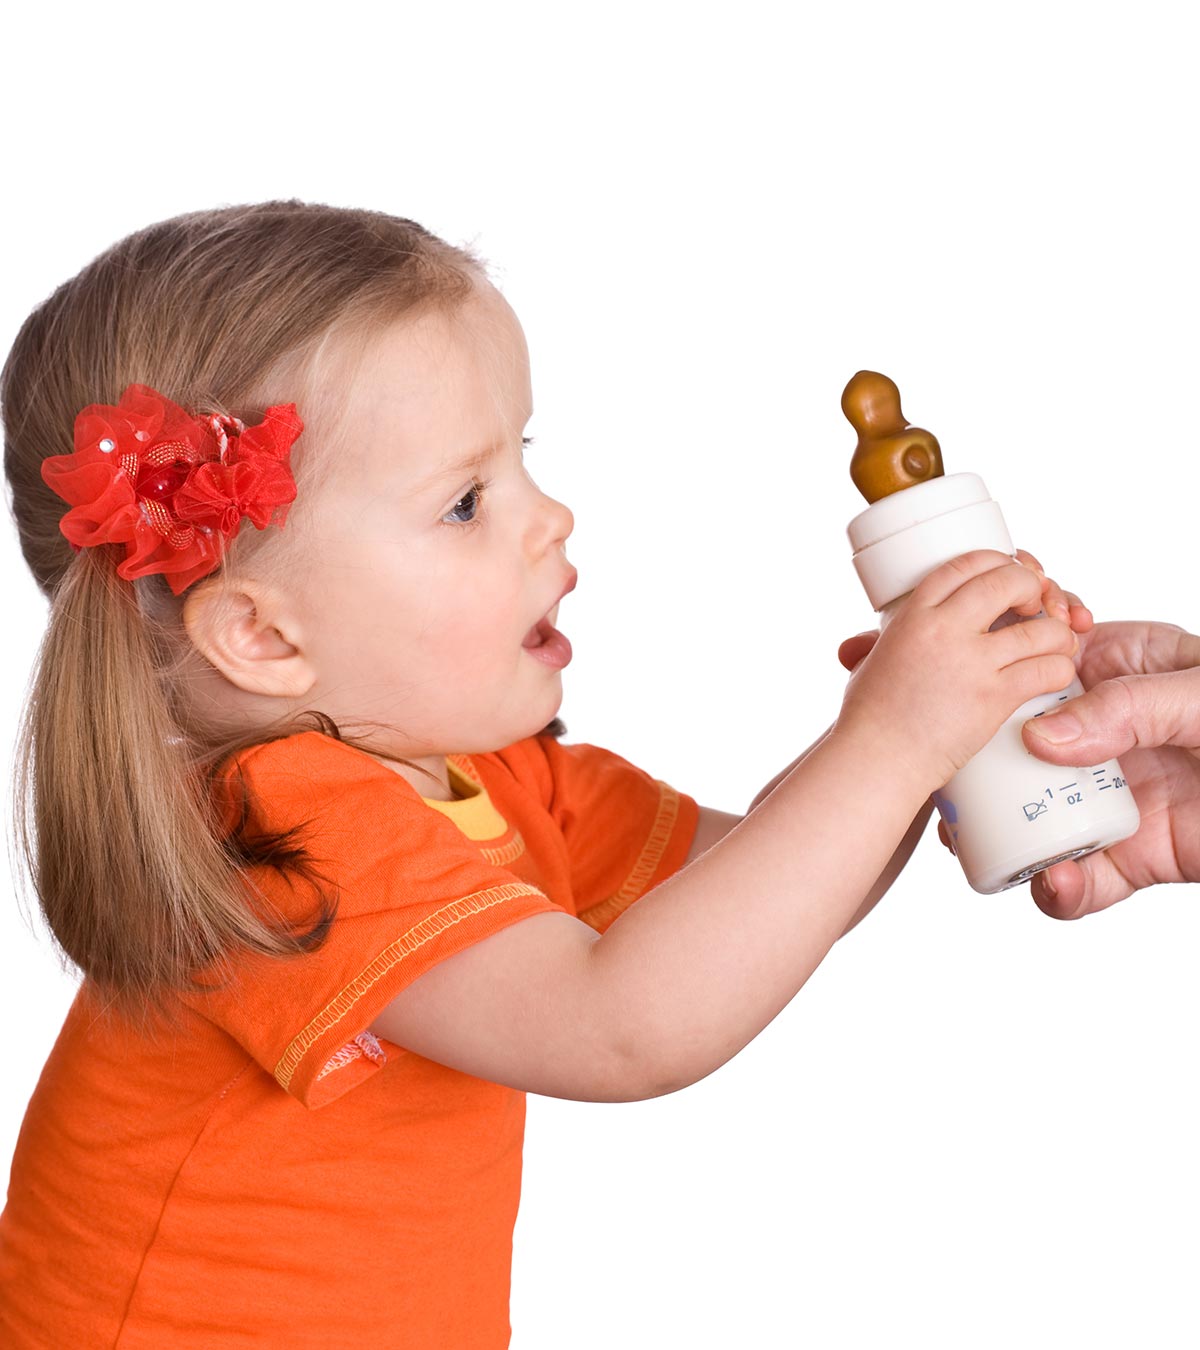 什么时候该停止用奶瓶喂婴儿?该怎么做?